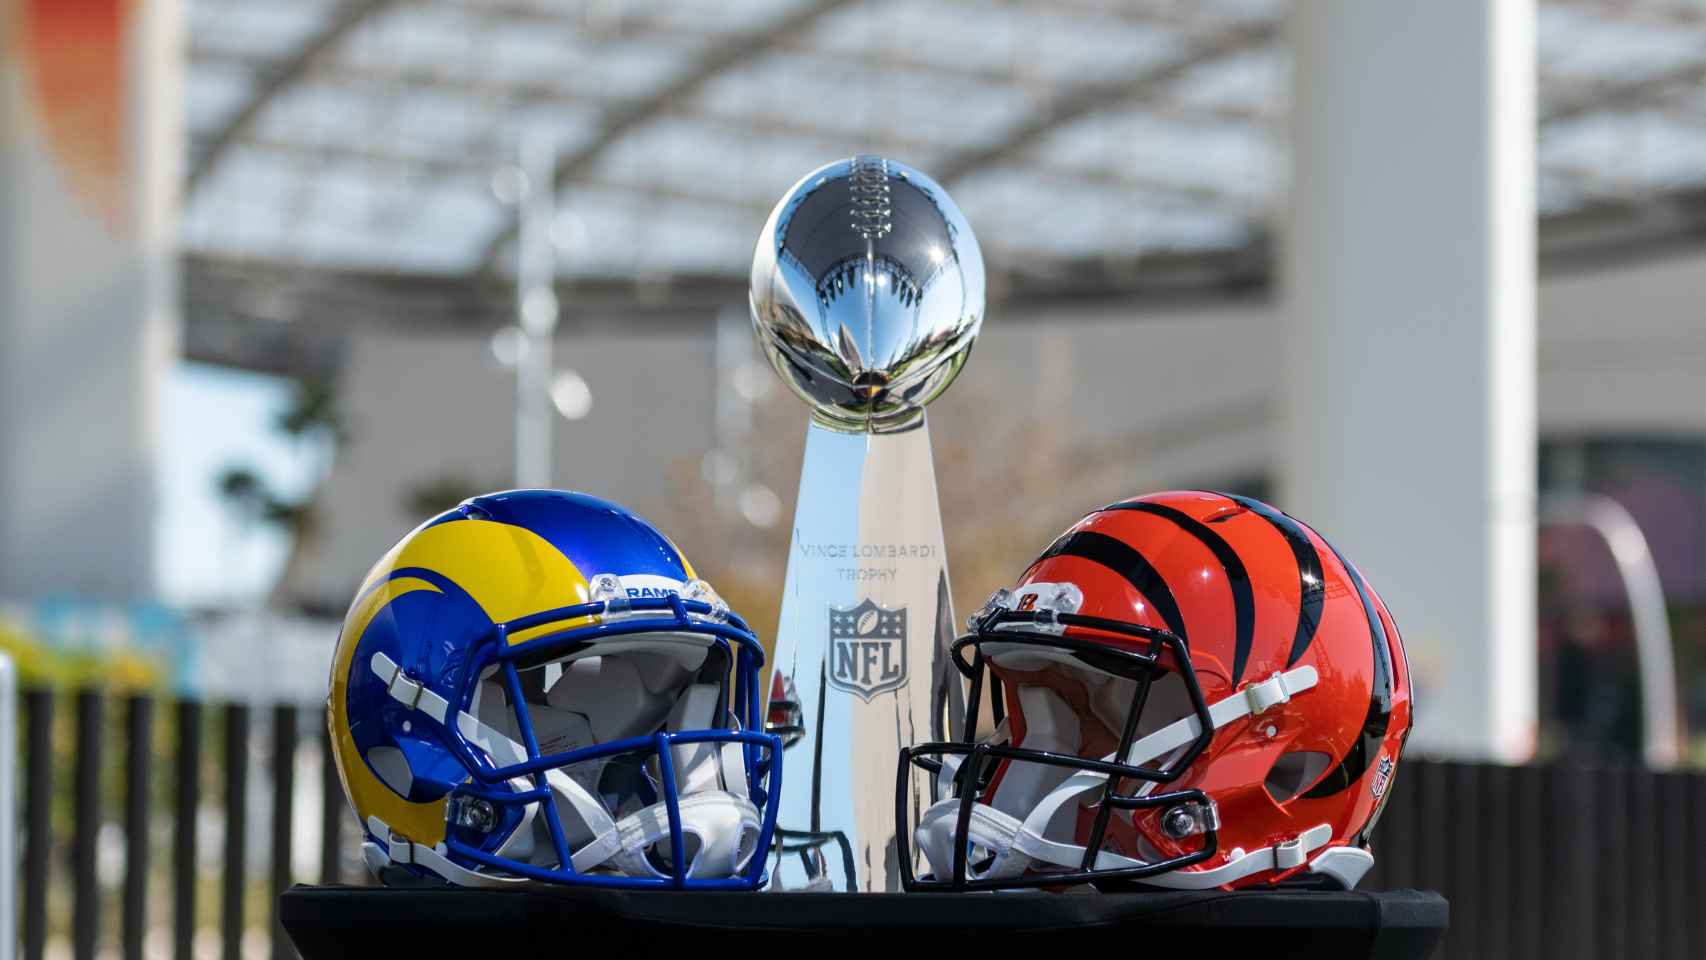 Cascos de Los Angeles Rams y de los Cincinnati Bengals, rivales en la Super Bowl LVI